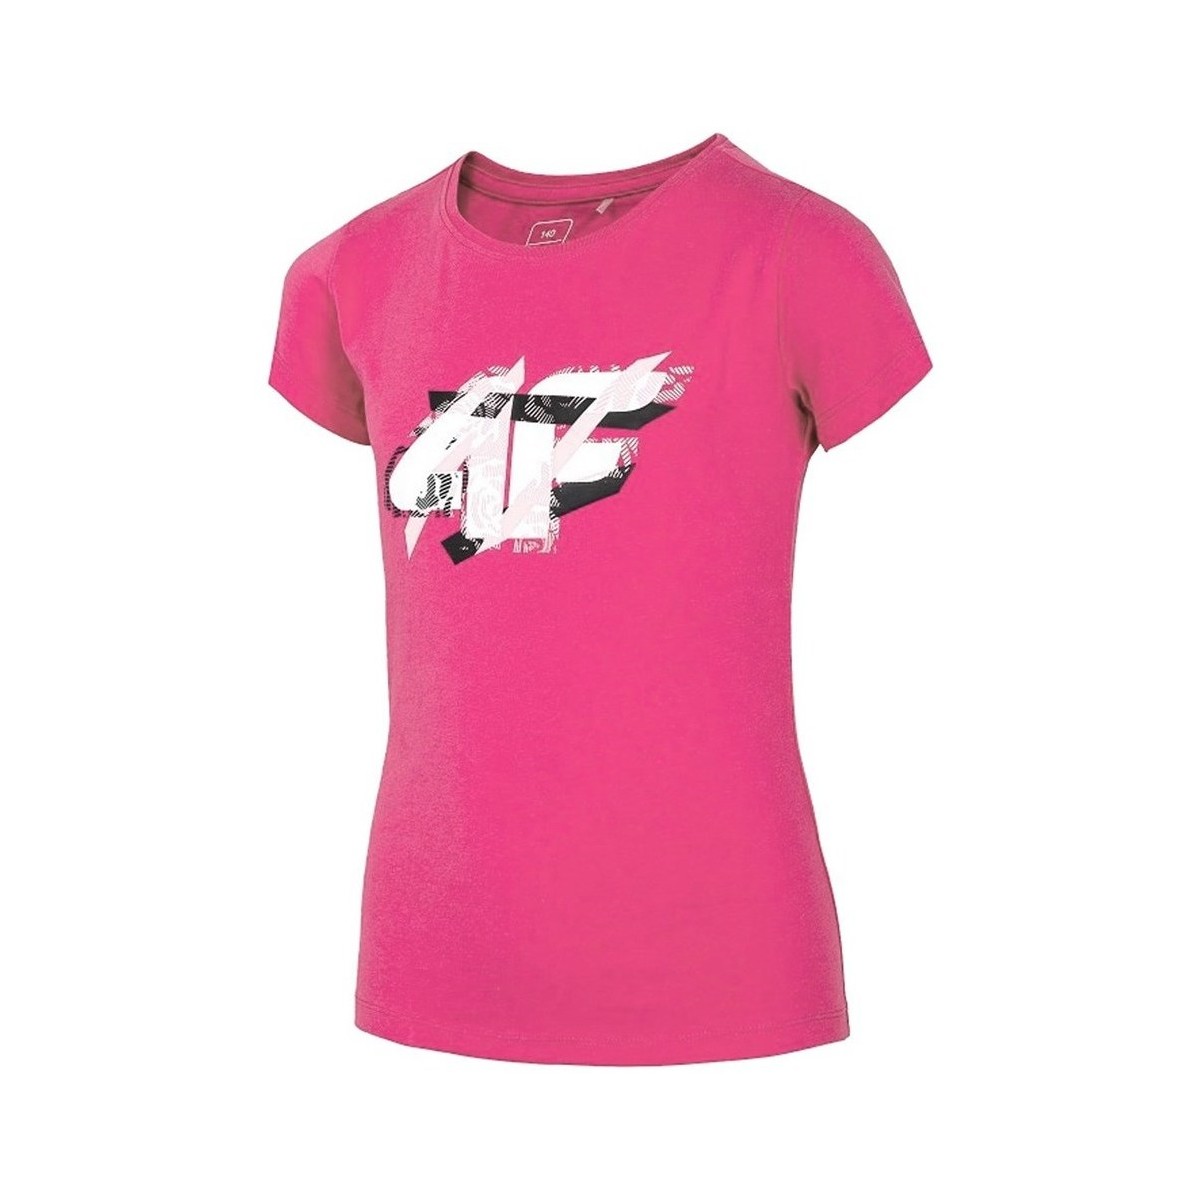 textil Pige T-shirts m. korte ærmer 4F JTSD002 Pink